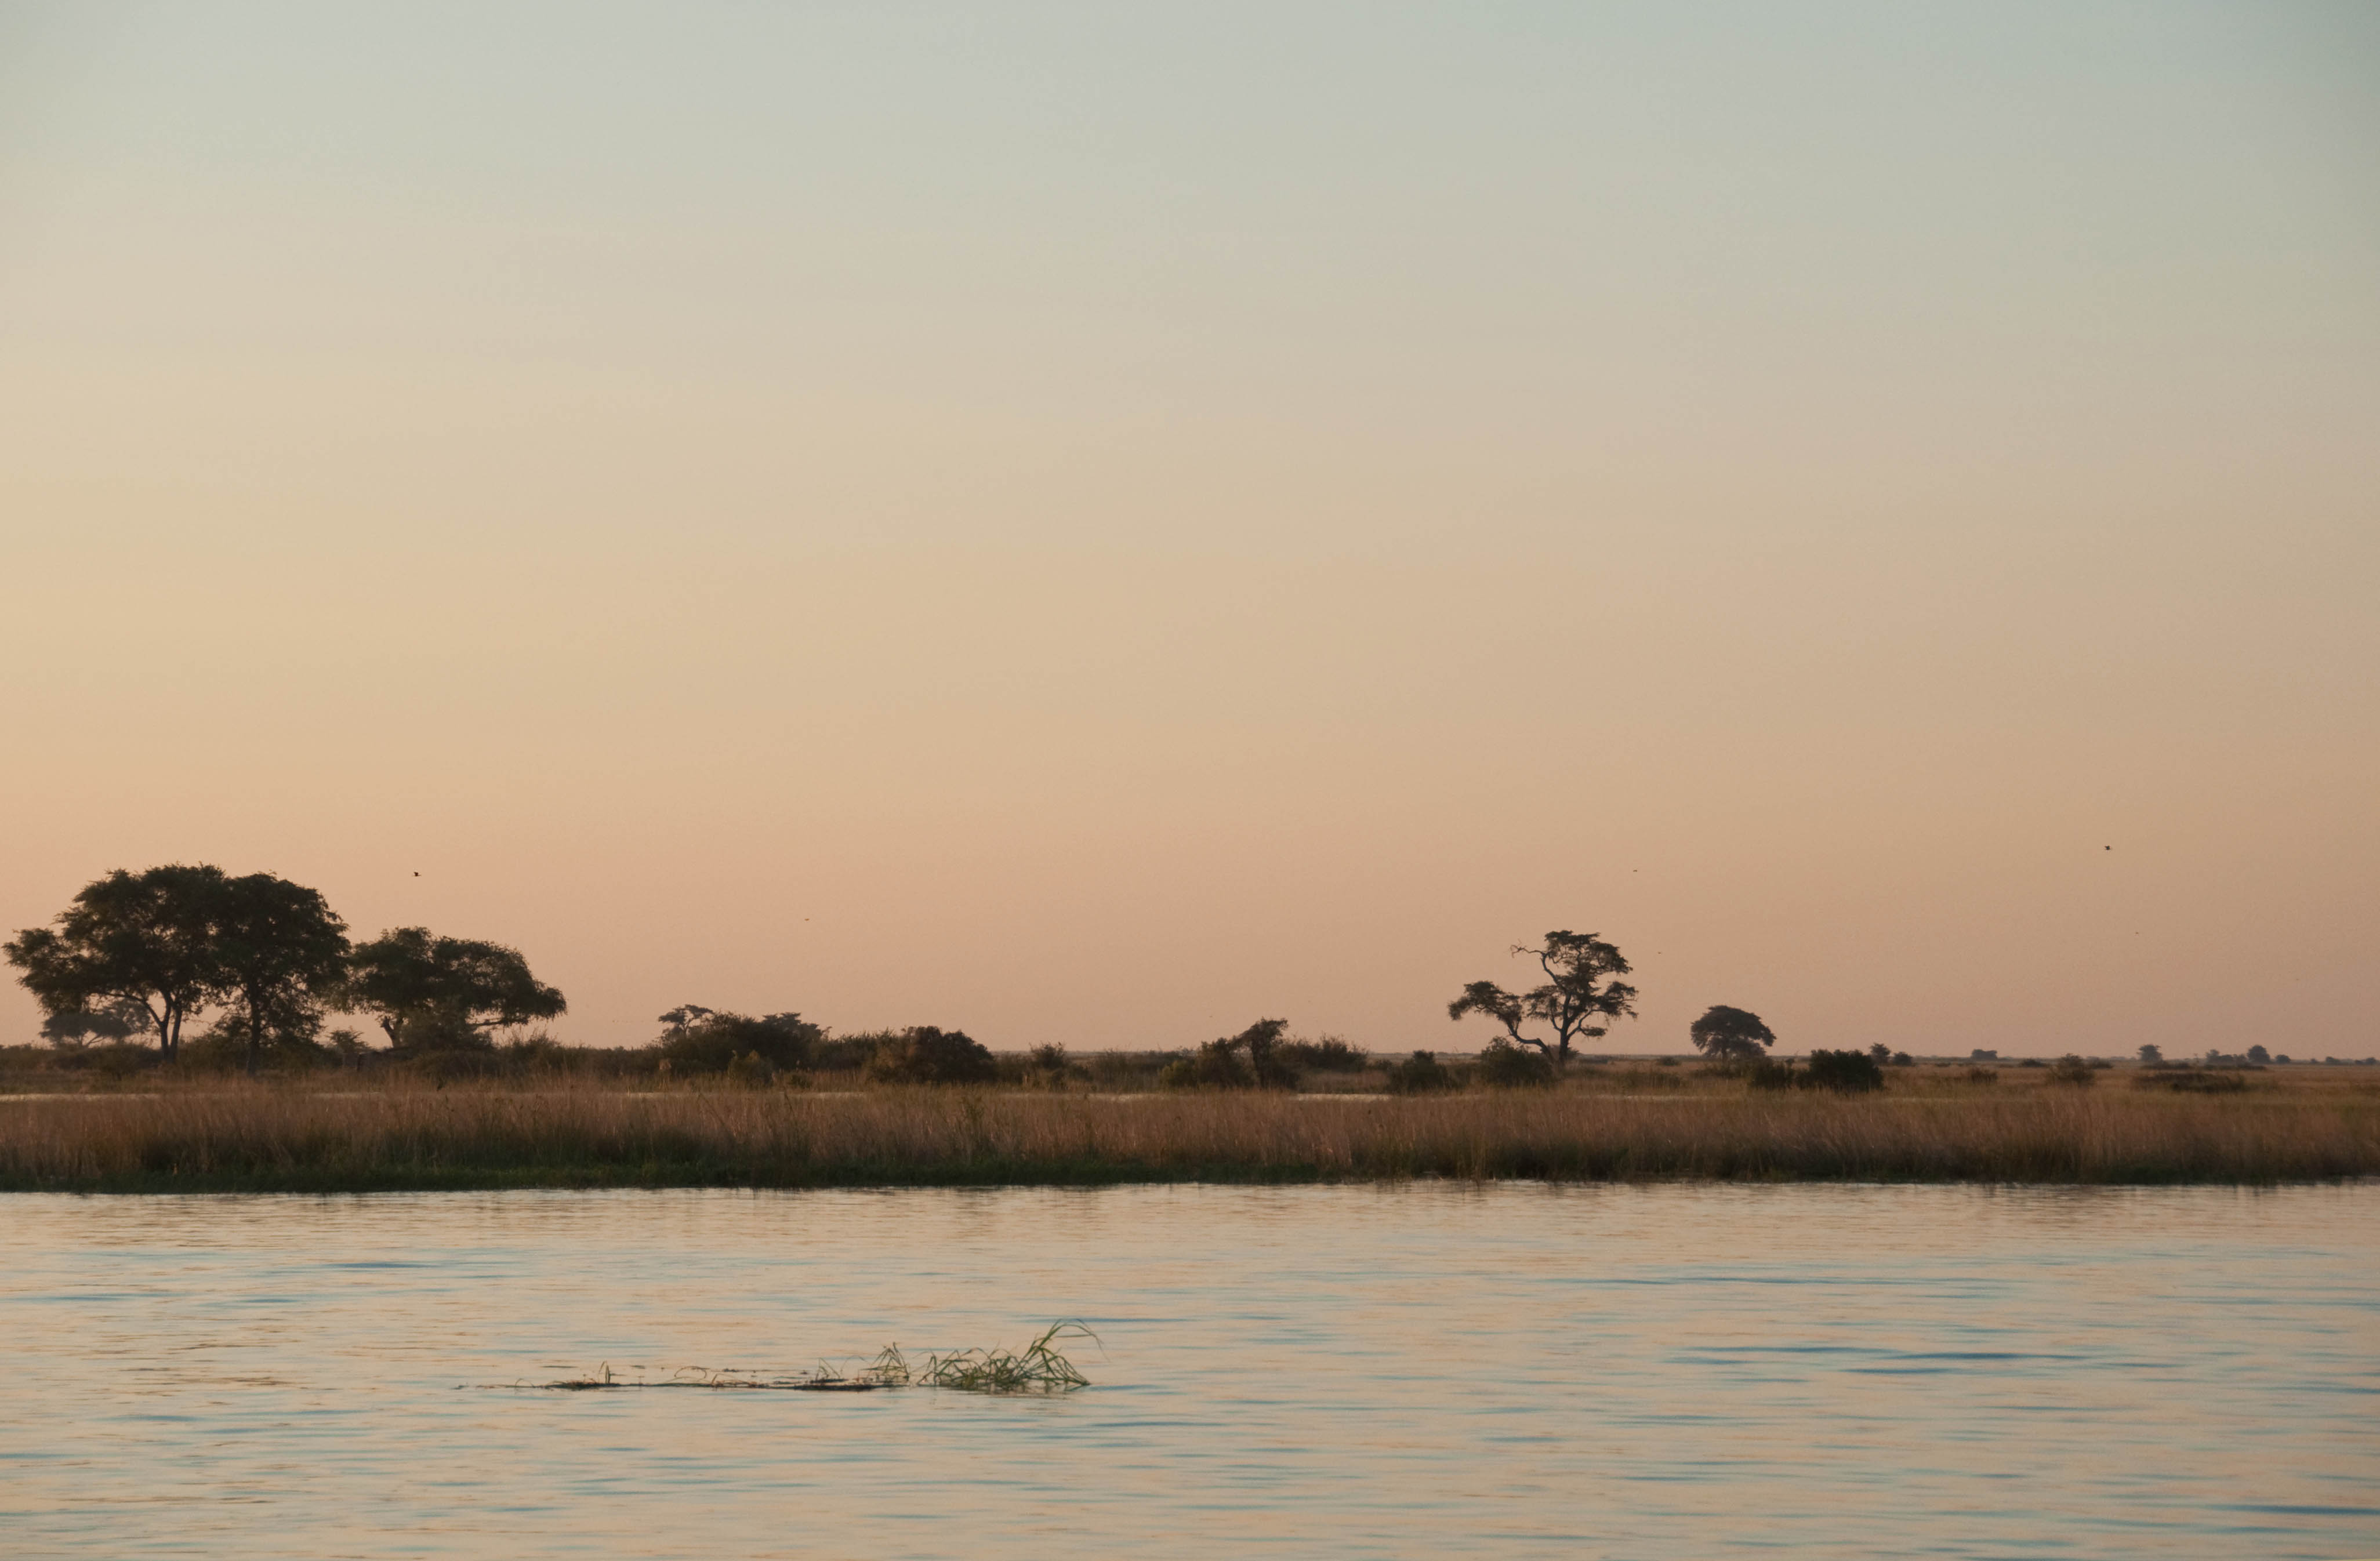 Chobe River, Botswana